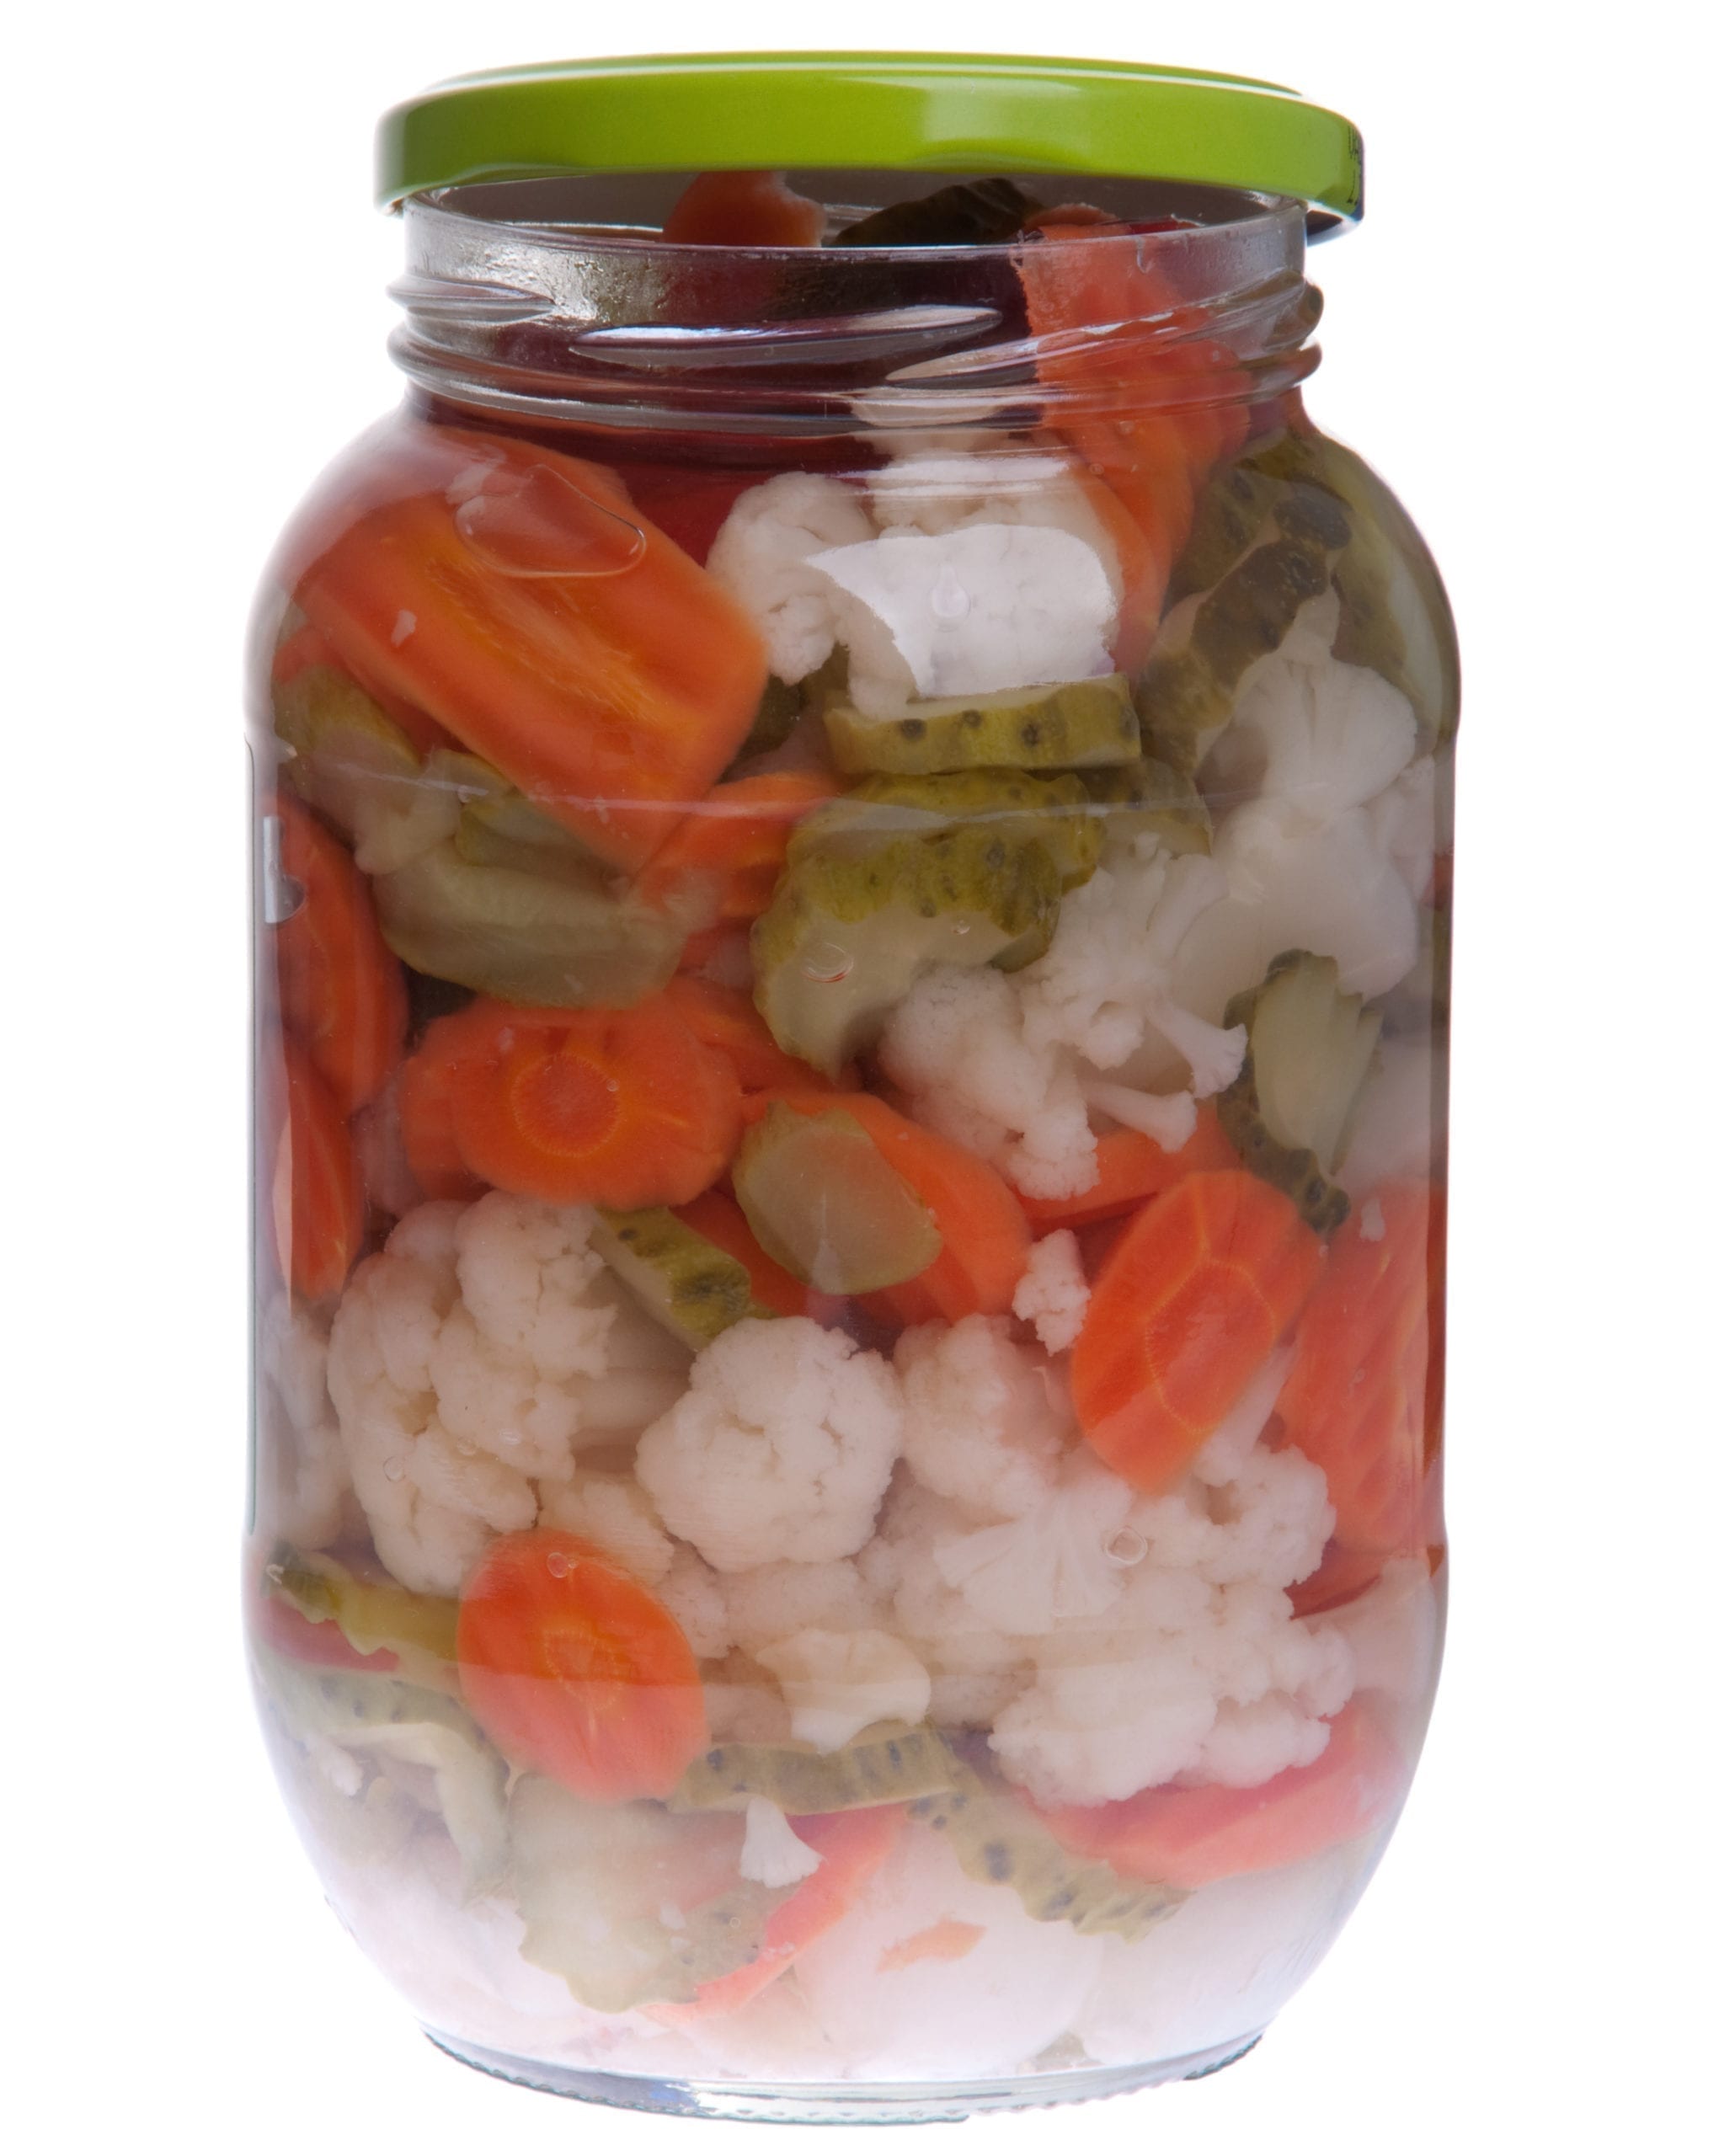 Pickels jar